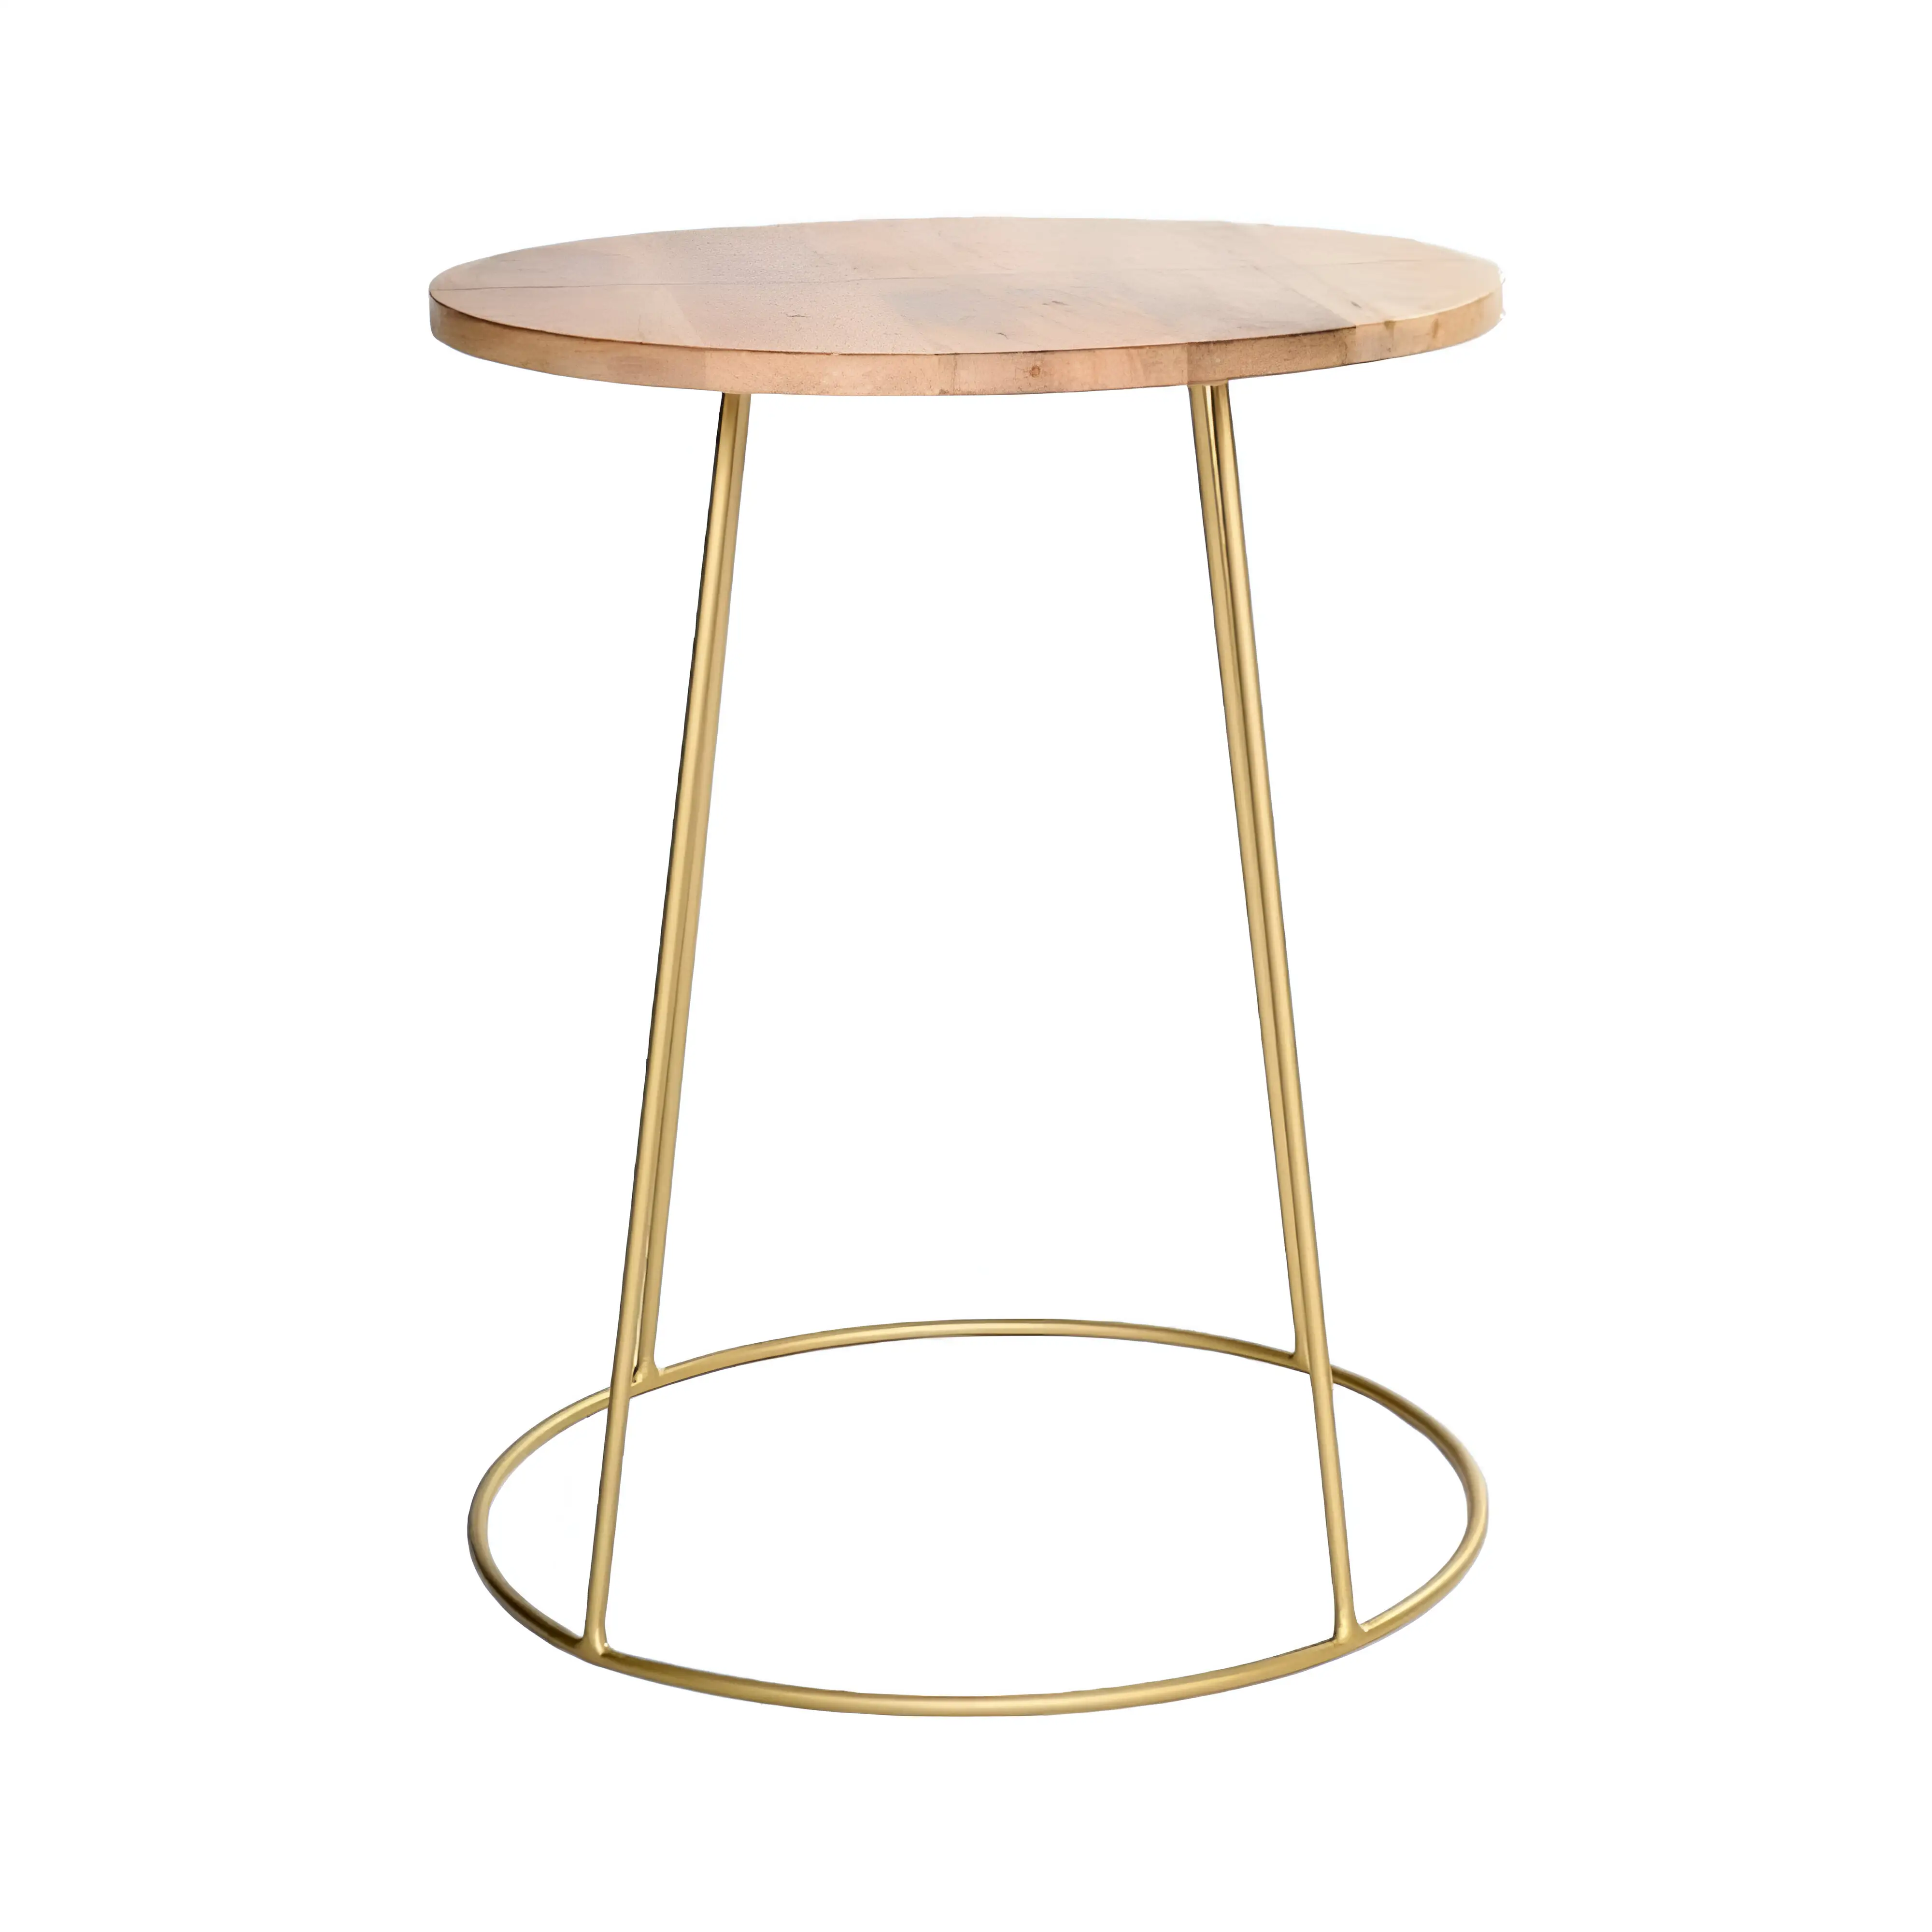 Оптовая продажа, Новое поступление, кофейный столик круглой формы с металлической основой, деревянный столик, Супер специальный дизайн, центральный столик для разных случаев